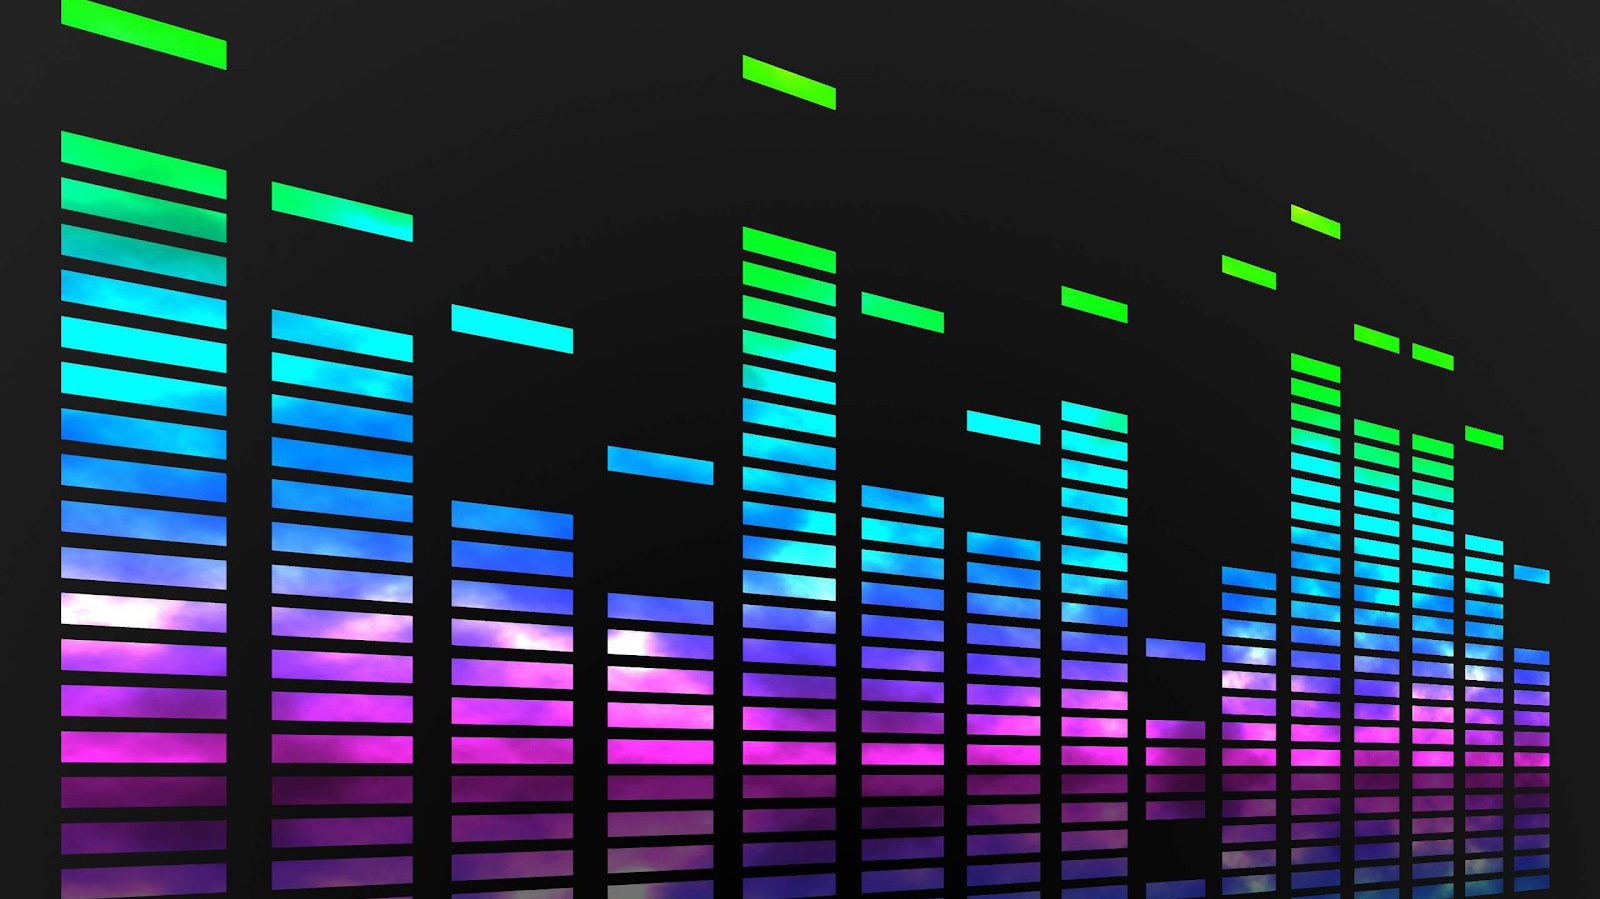 Phần mềm nghe nhạc: Thưởng thức những bản nhạc yêu thích của bạn ngay trên thiết bị di động của mình với phần mềm nghe nhạc chất lượng cao. Chọn lựa từ kho nhạc đa dạng và cập nhật liên tục, sẵn sàng mang đến cho bạn những trải nghiệm âm nhạc tuyệt vời nhất.